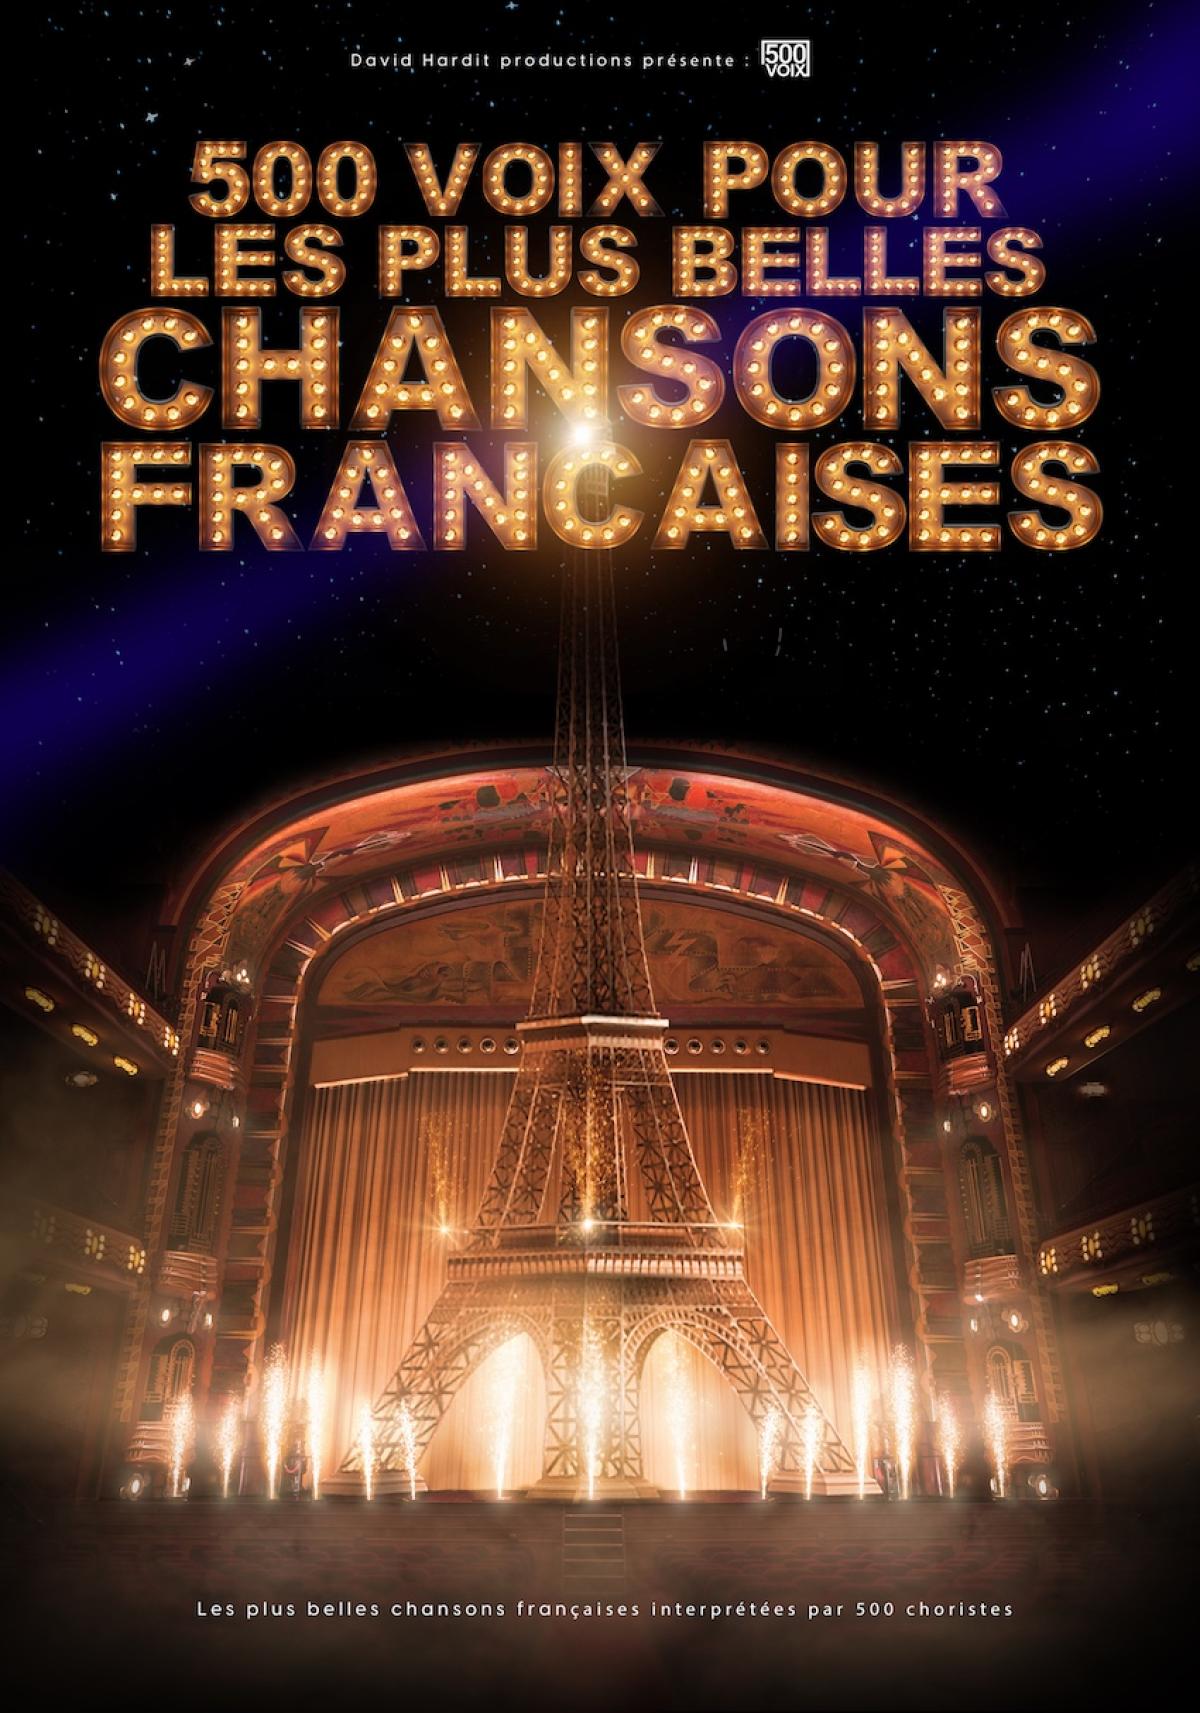 500 Voix Pour Les Plus Belles Chansons at Arena Loire Tickets